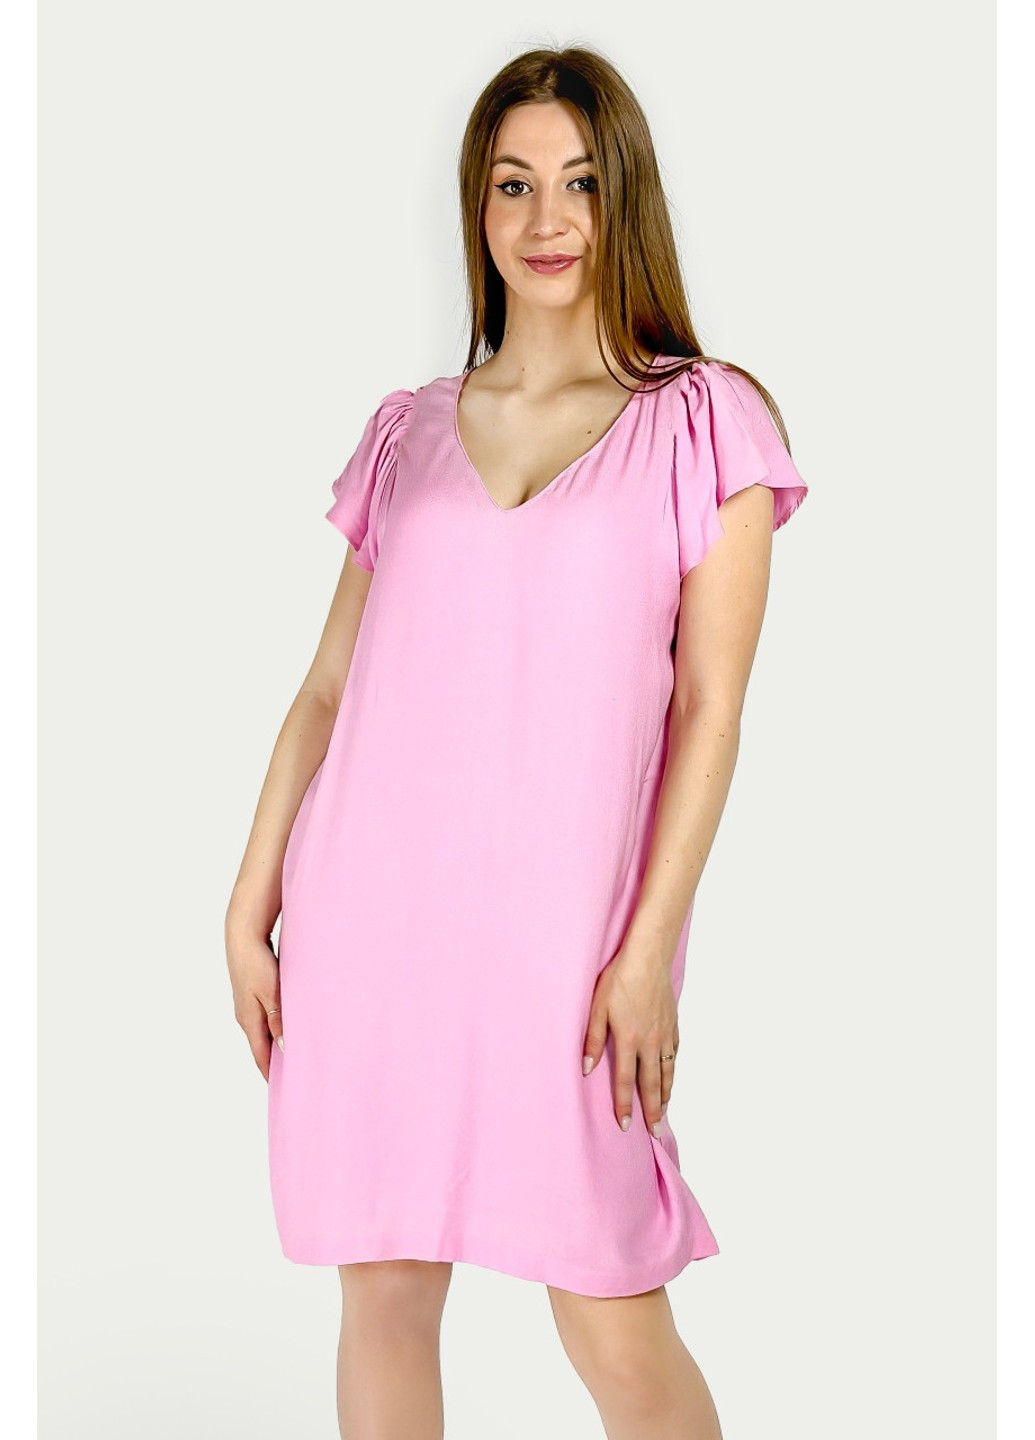 Розовое повседневный платье 1112/055/636 футляр Zara однотонное